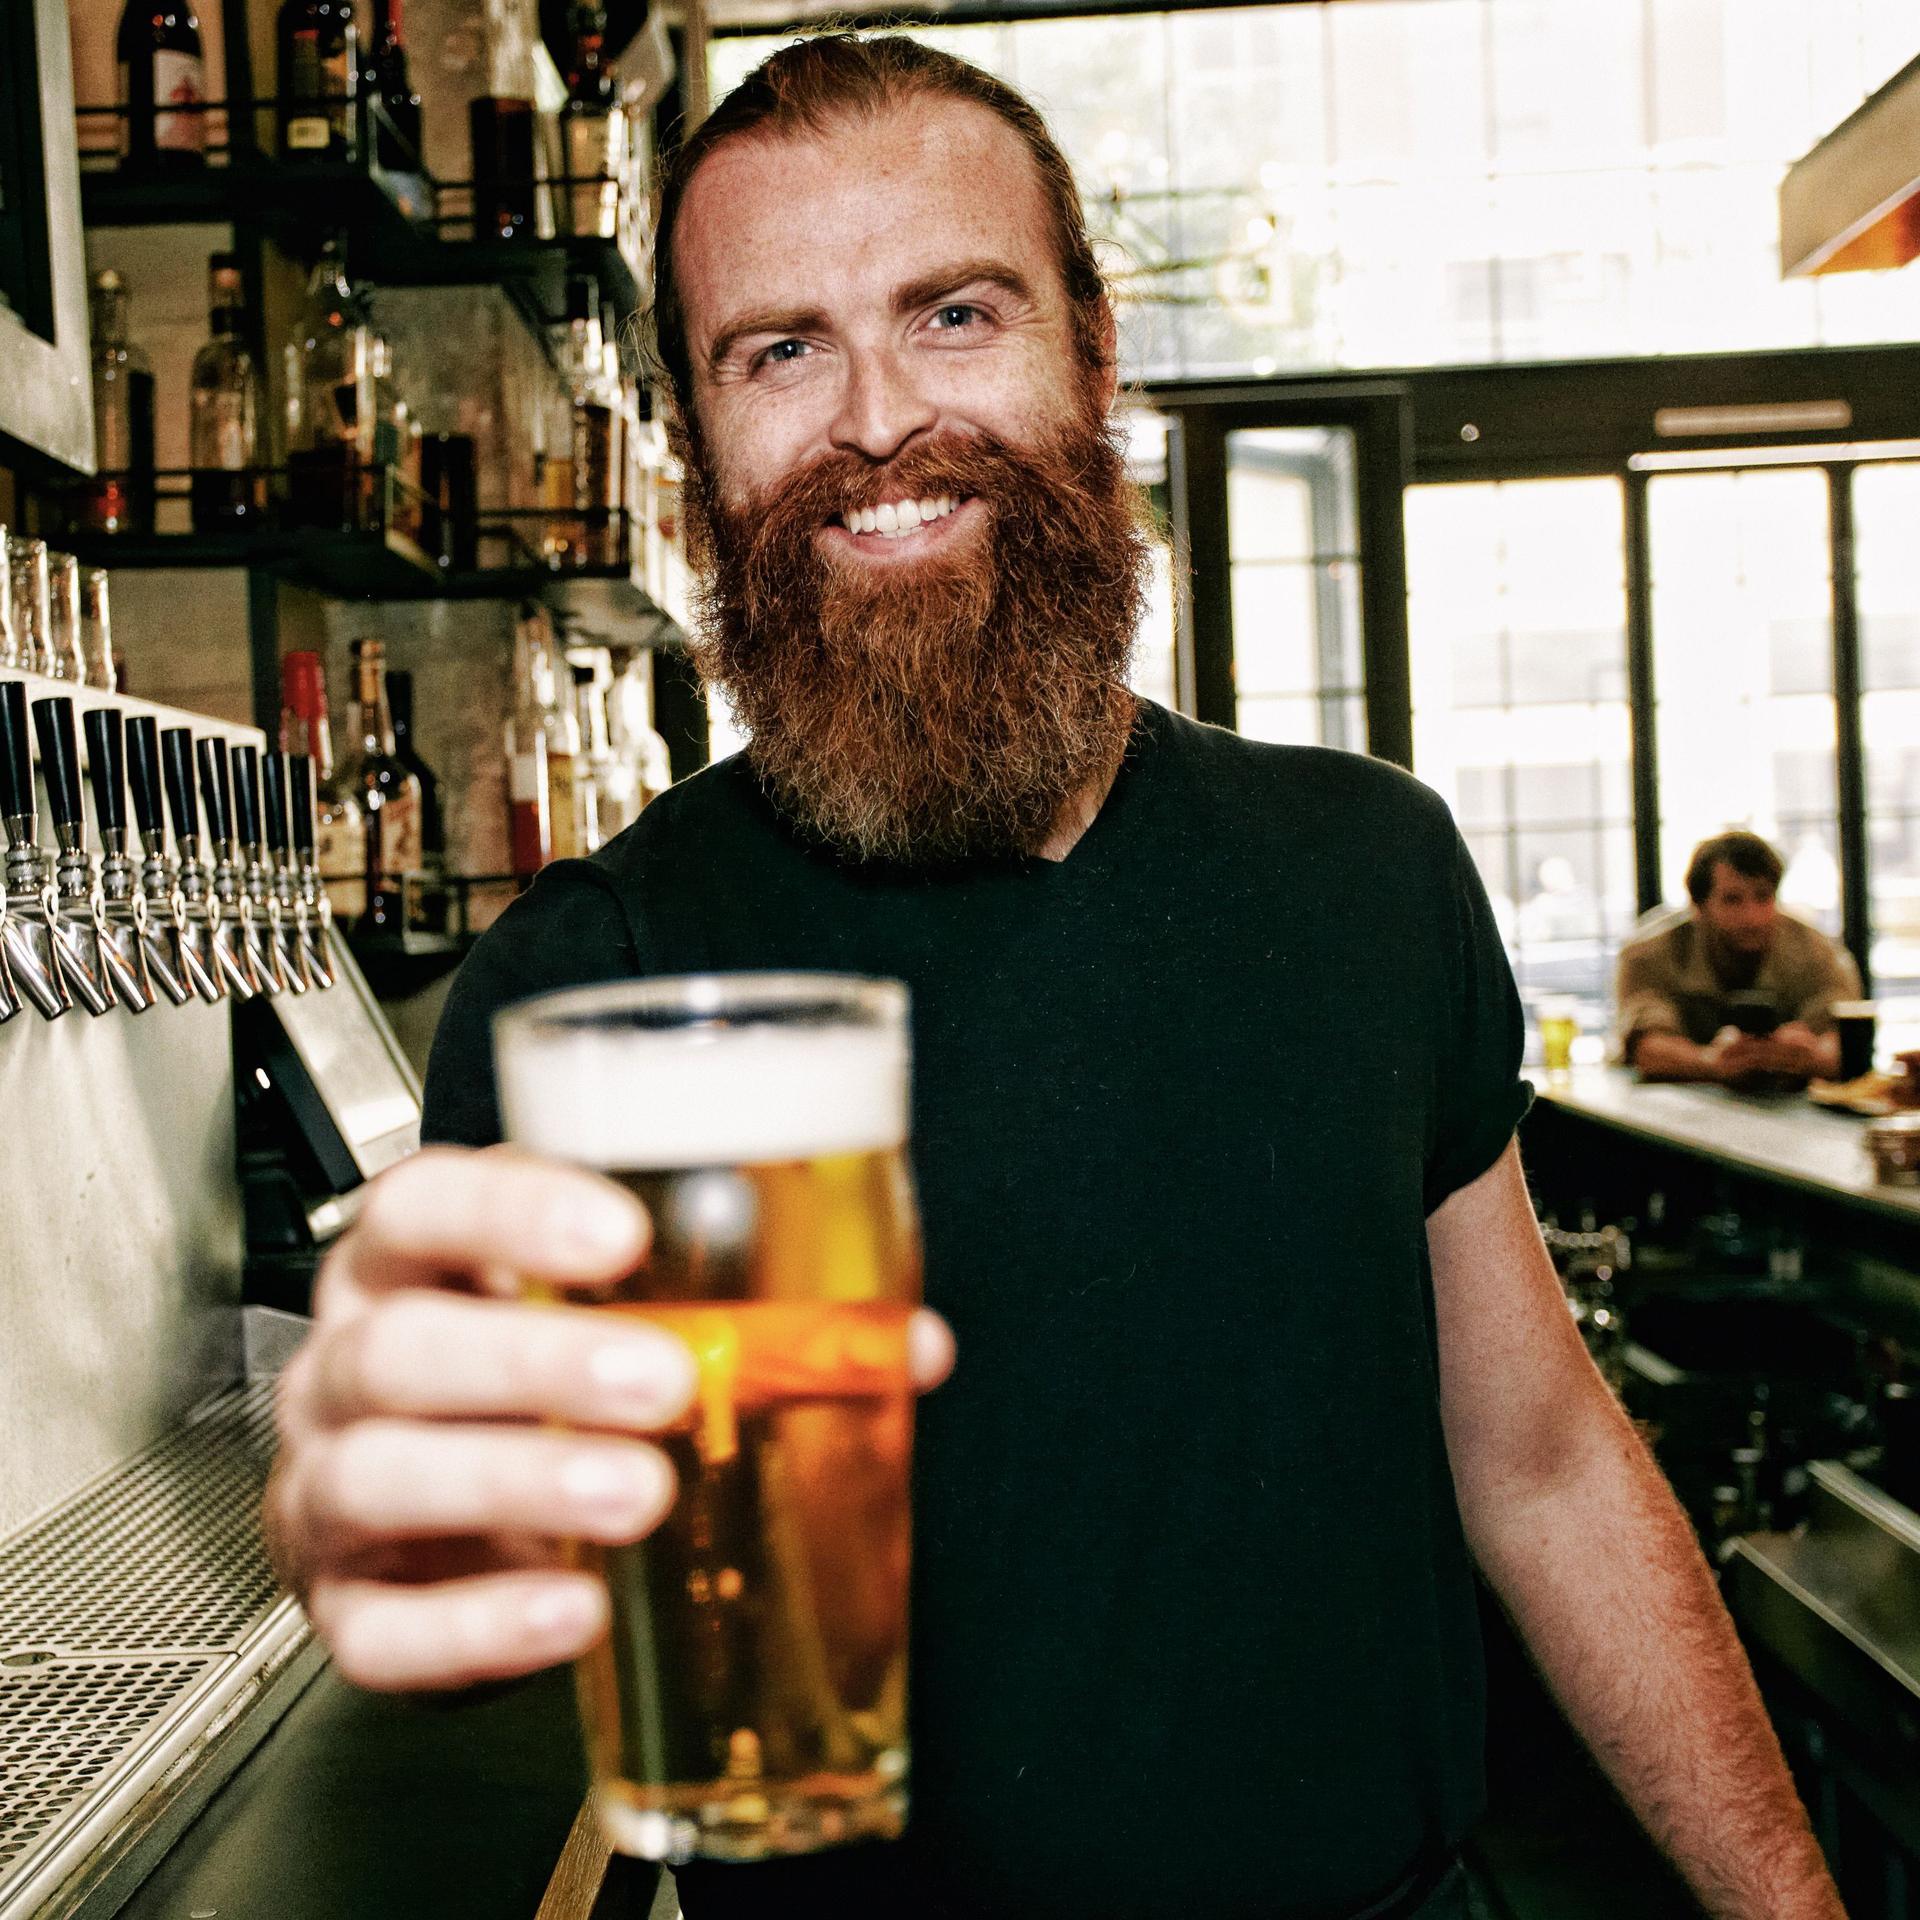 Ein junger Mann mit einem langen rötlichen Bart steht hinter einer Theke und streckt dem Betrachter lächelnd ein gefülltes Bierglas entgegen.